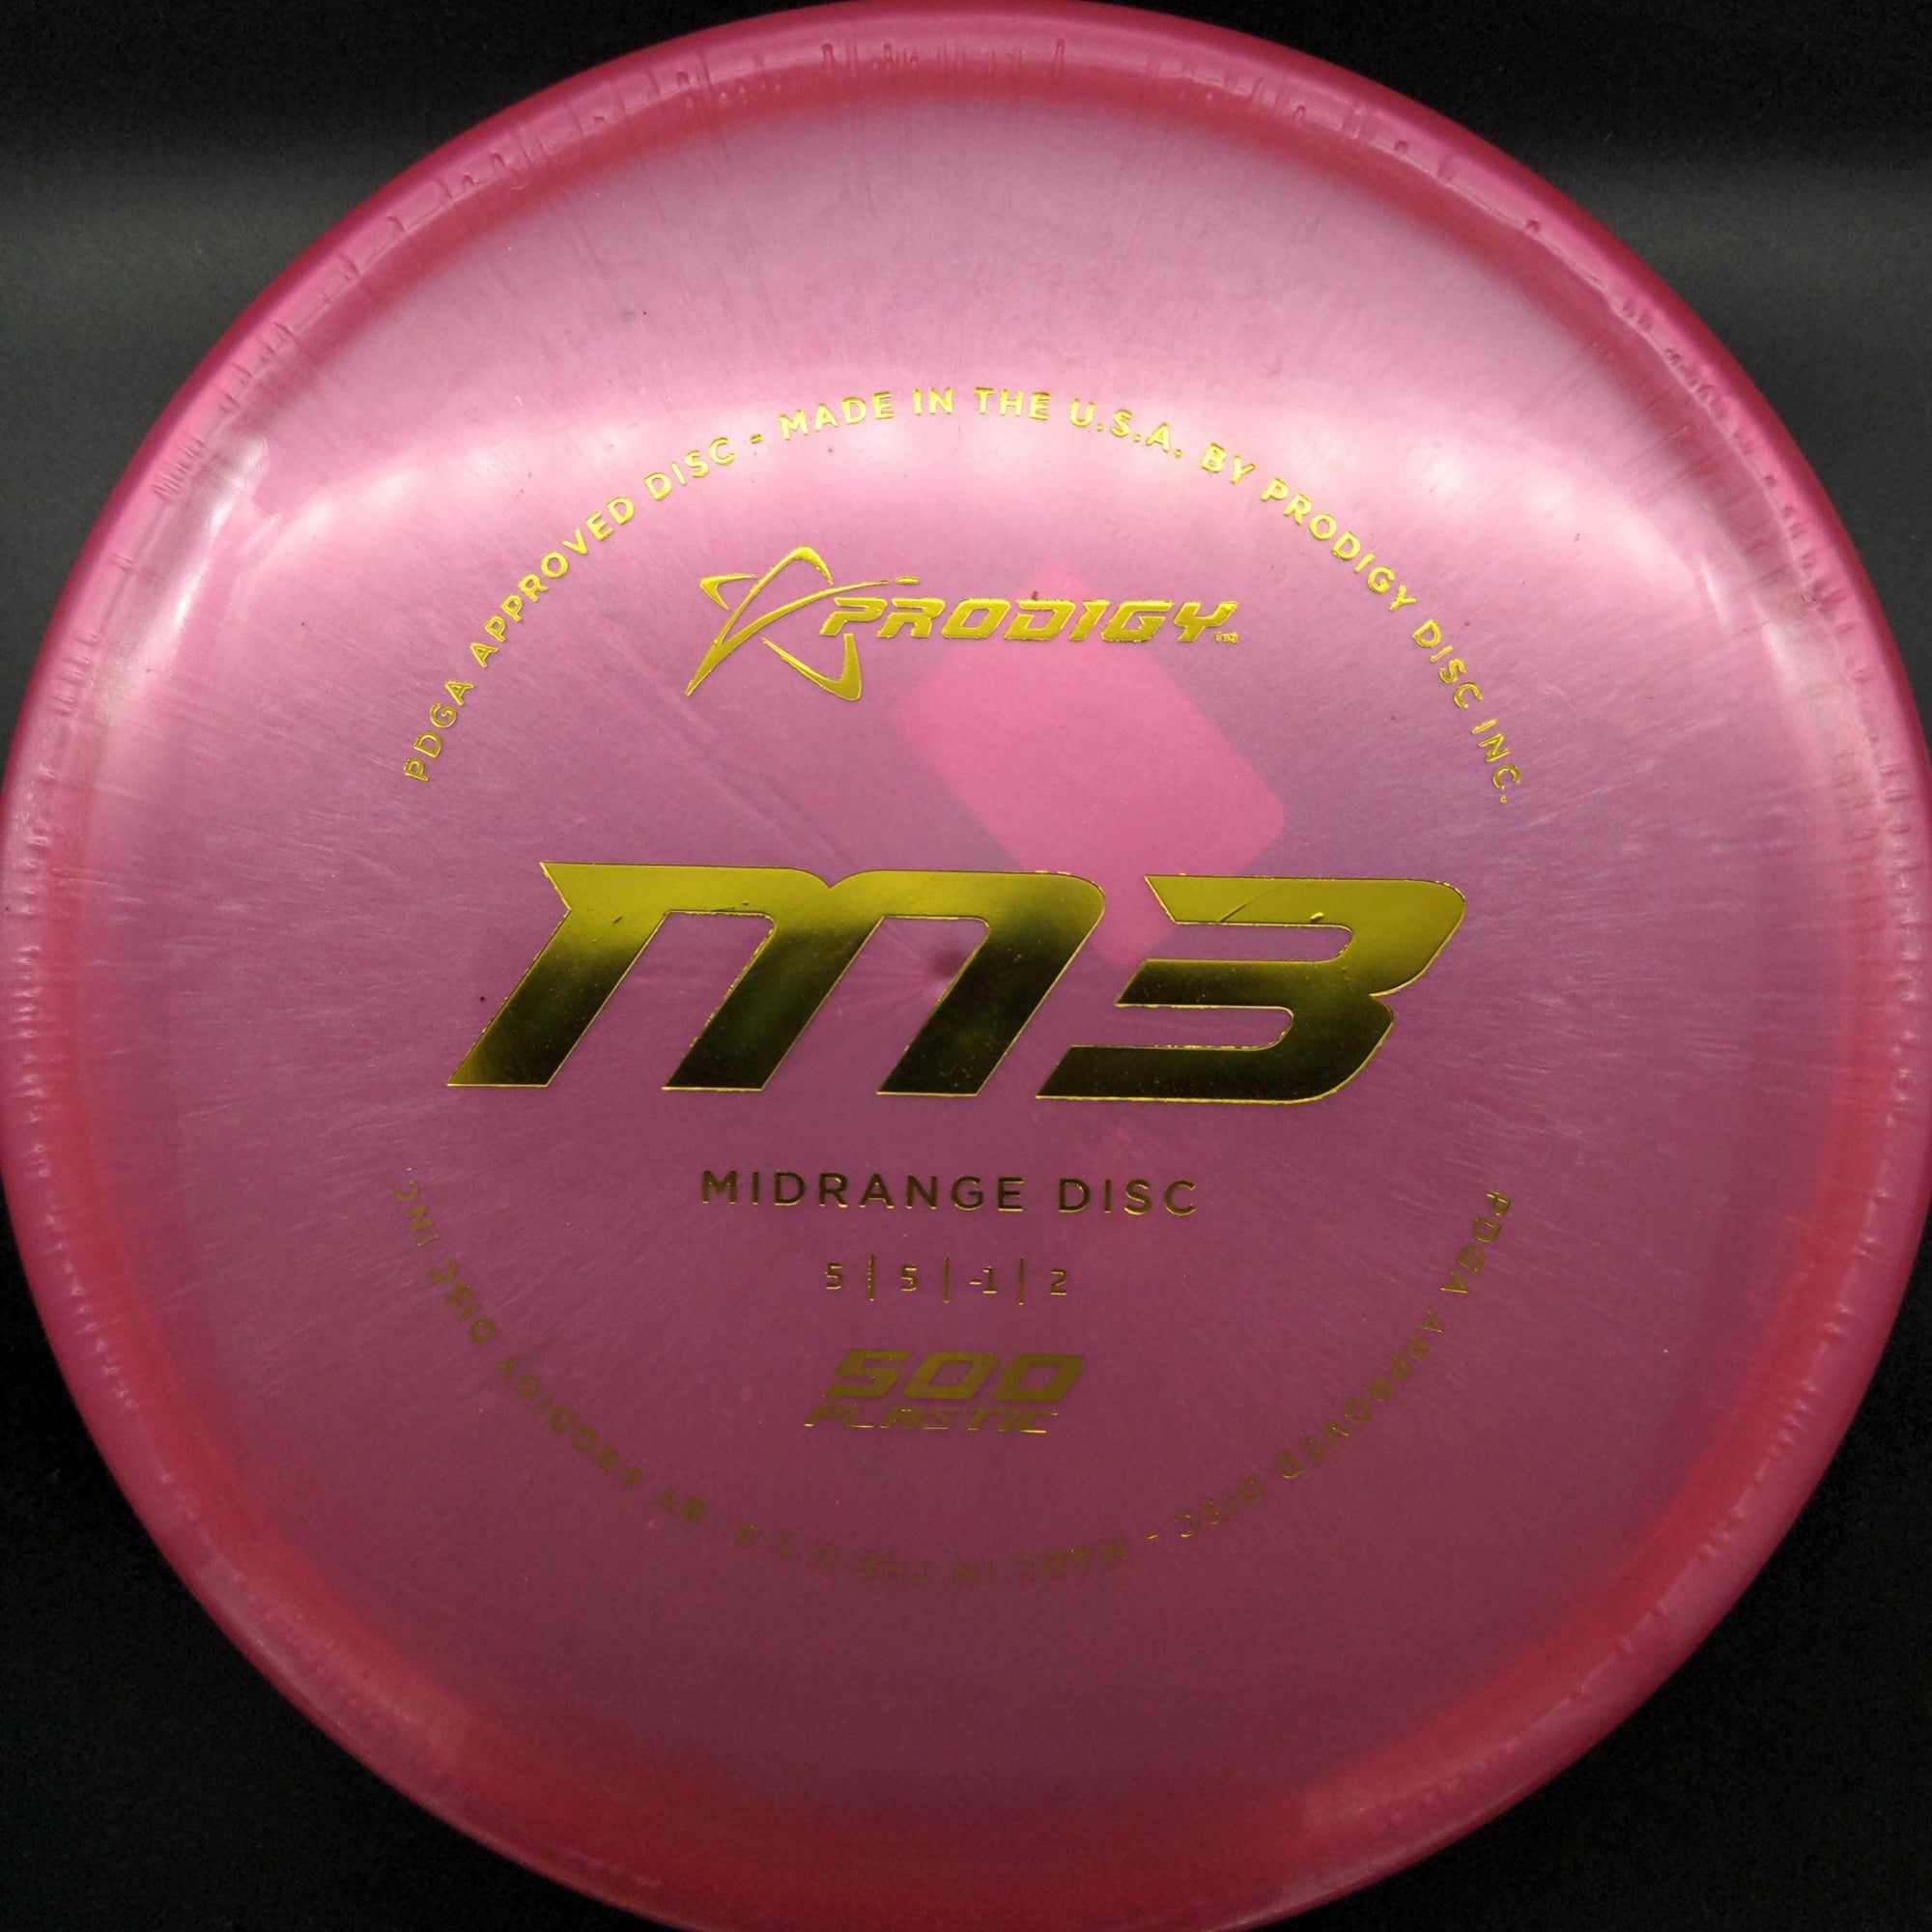 Prodigy Mid Range Dark Pink Yellow Stamp 180g M3 500 Plastic